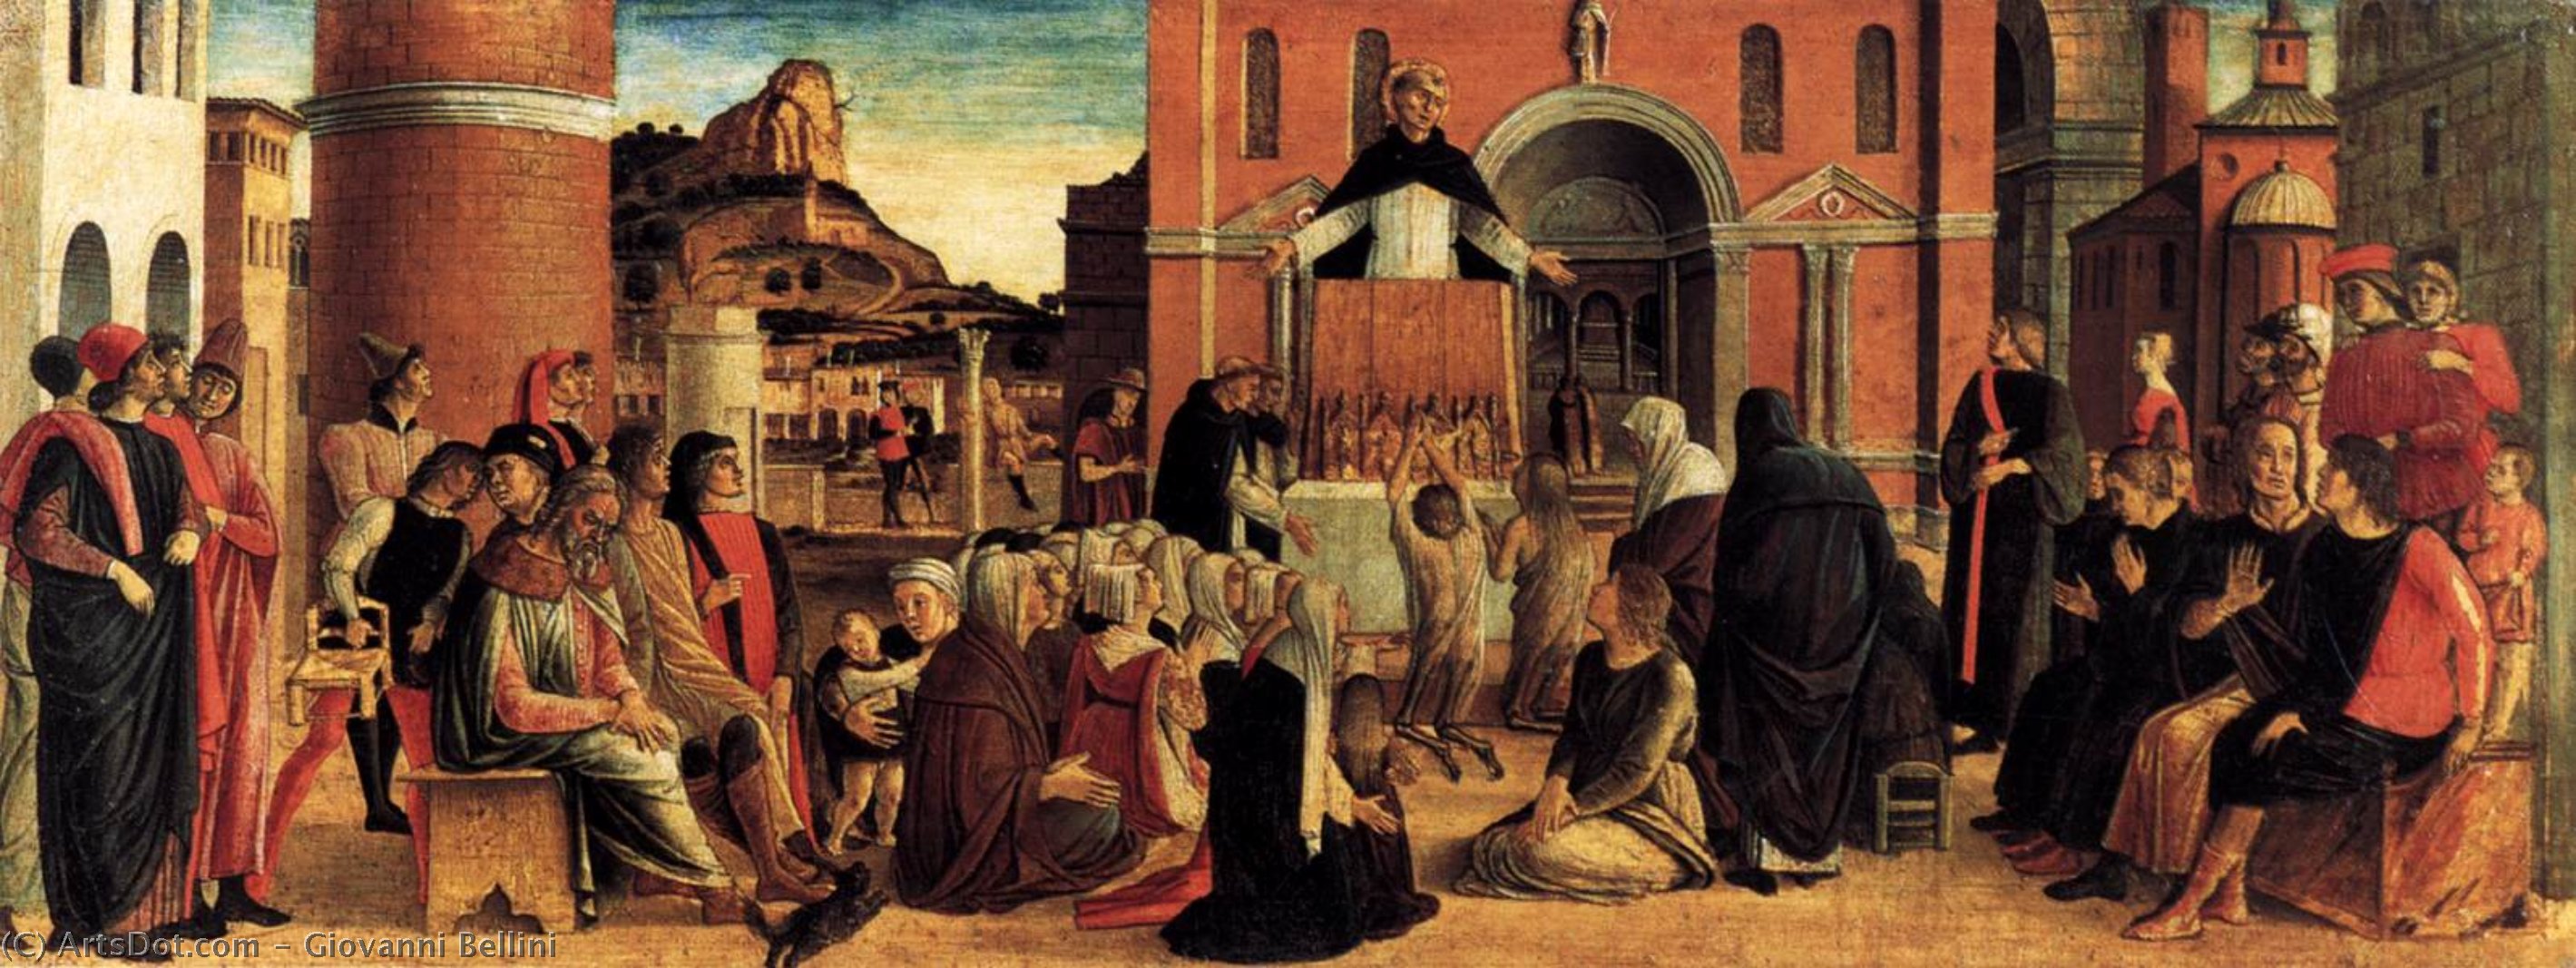 WikiOO.org - אנציקלופדיה לאמנויות יפות - ציור, יצירות אמנות Giovanni Bellini - Polyptych of San Vincenzo Ferreri (predella)